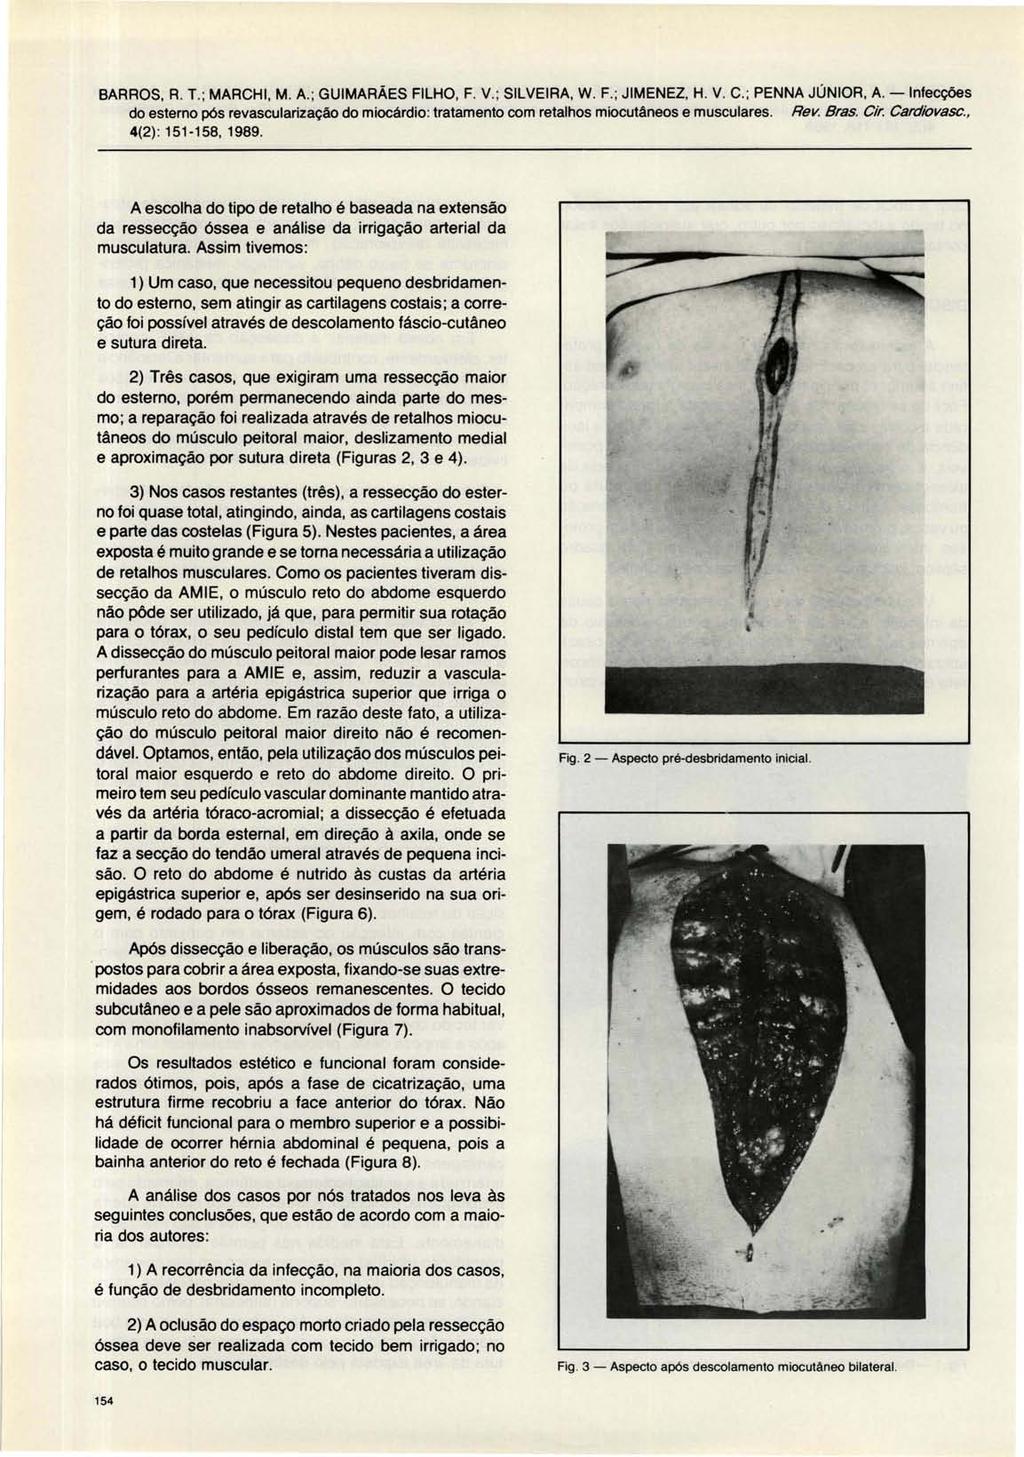 BARROS, R. T.; MARCHI, M. A.; GUIMARÃES FILHO, F. V.; SILVEIRA, W. F.; JIMENEZ, H. V. C.; PENNA JÚNIOR, A. -Infecções 4(2) : 151-158, 1989.